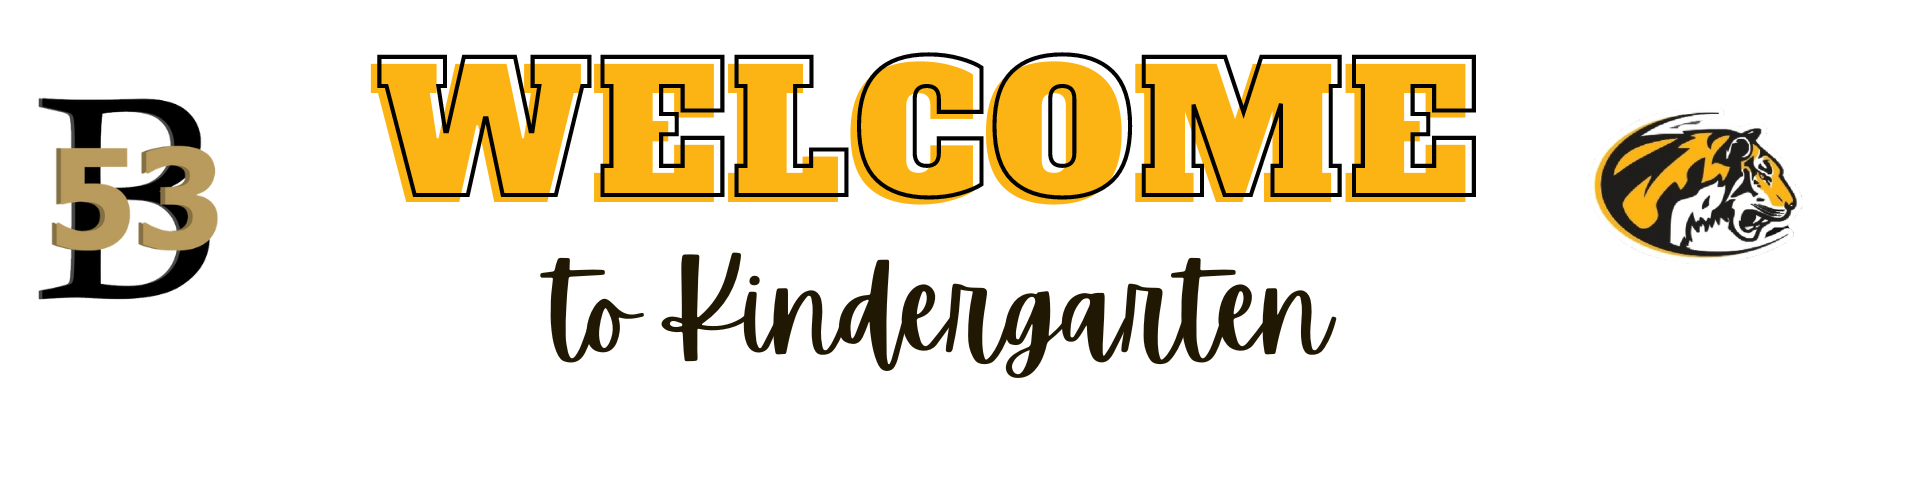 Welcome to Kindergarten Banner